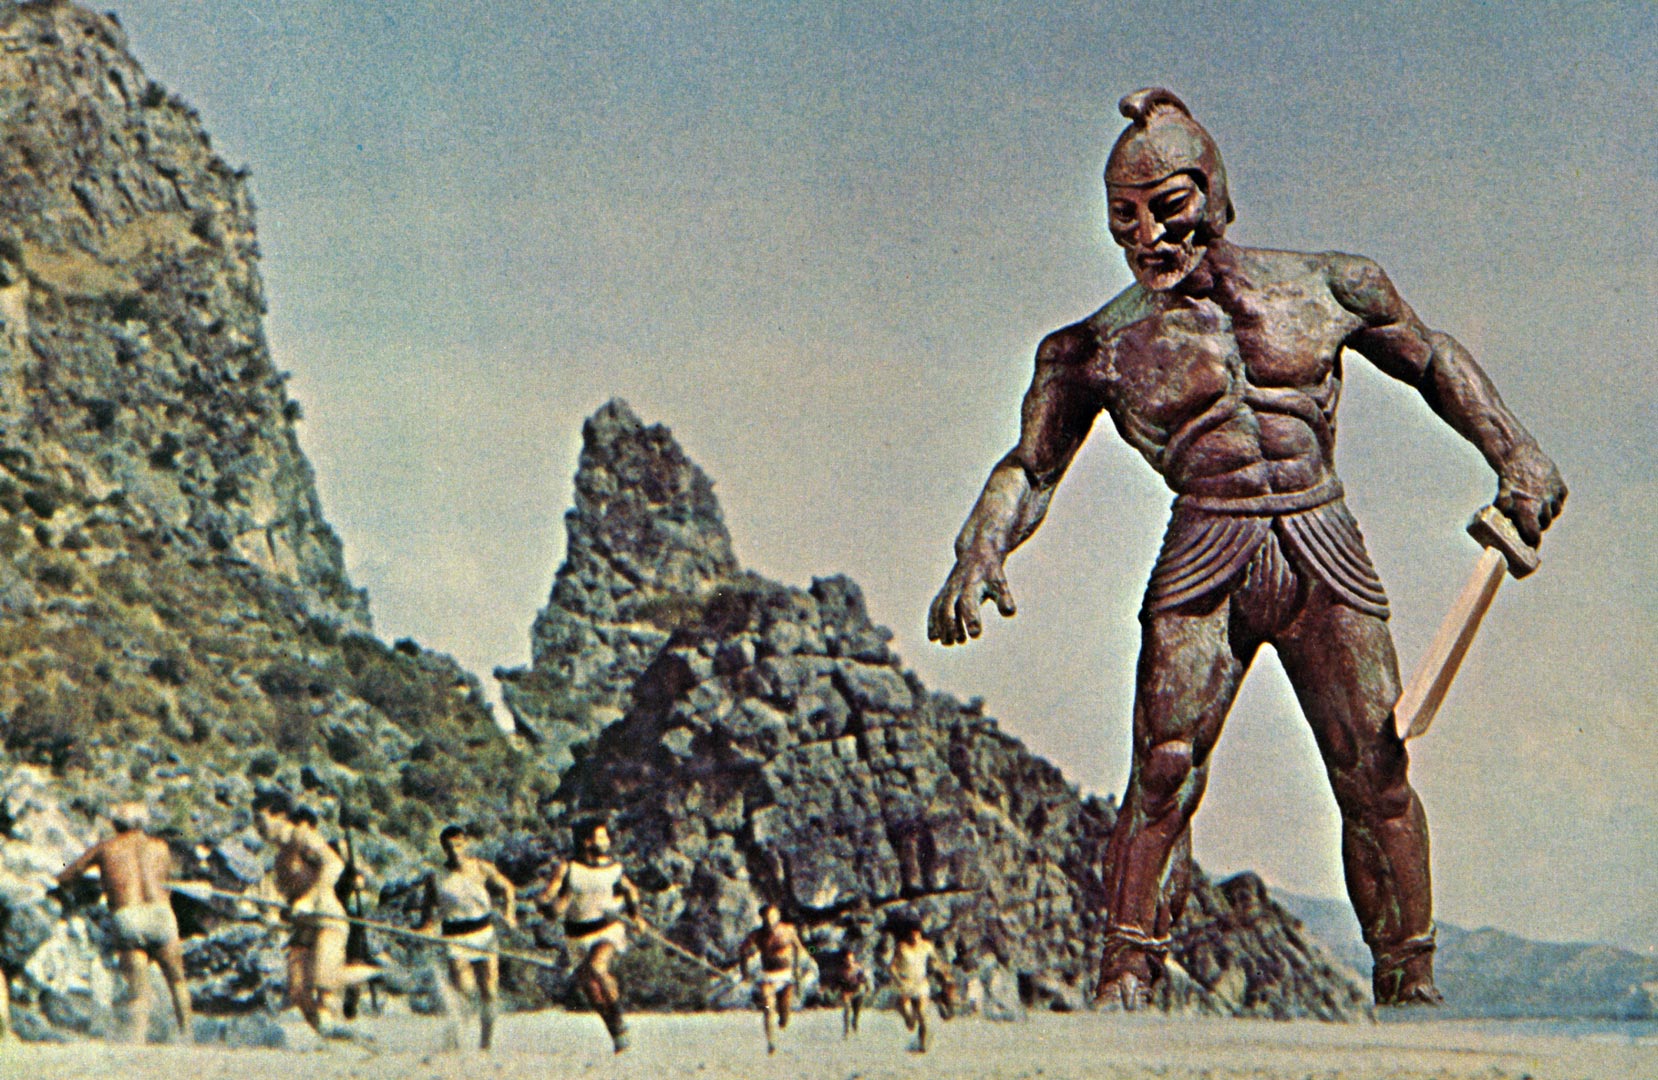 صحنه ای از فیلم جیسون و آرگوناتها که مجمسه بزرگ برنز ی با شمشیری در دست در تعقیب جنگجویان است